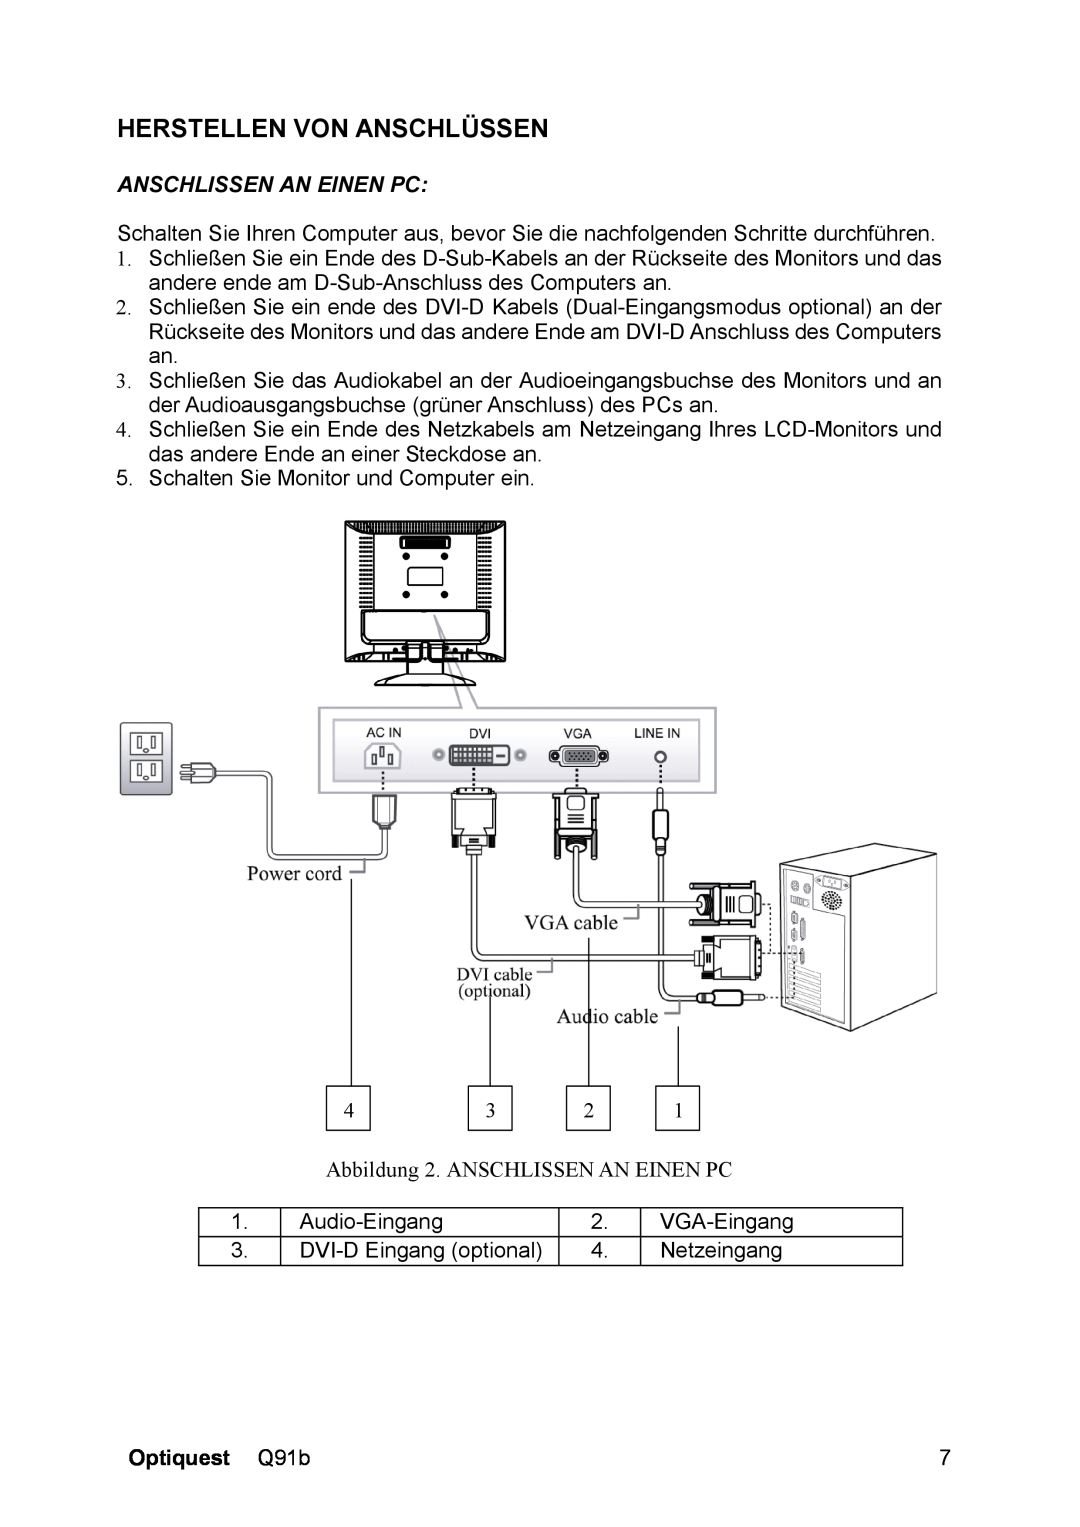 ViewSonic Q91B, VS12118 manual Herstellen Von Anschlüssen, Anschlissen An Einen Pc, Optiquest Q91b 